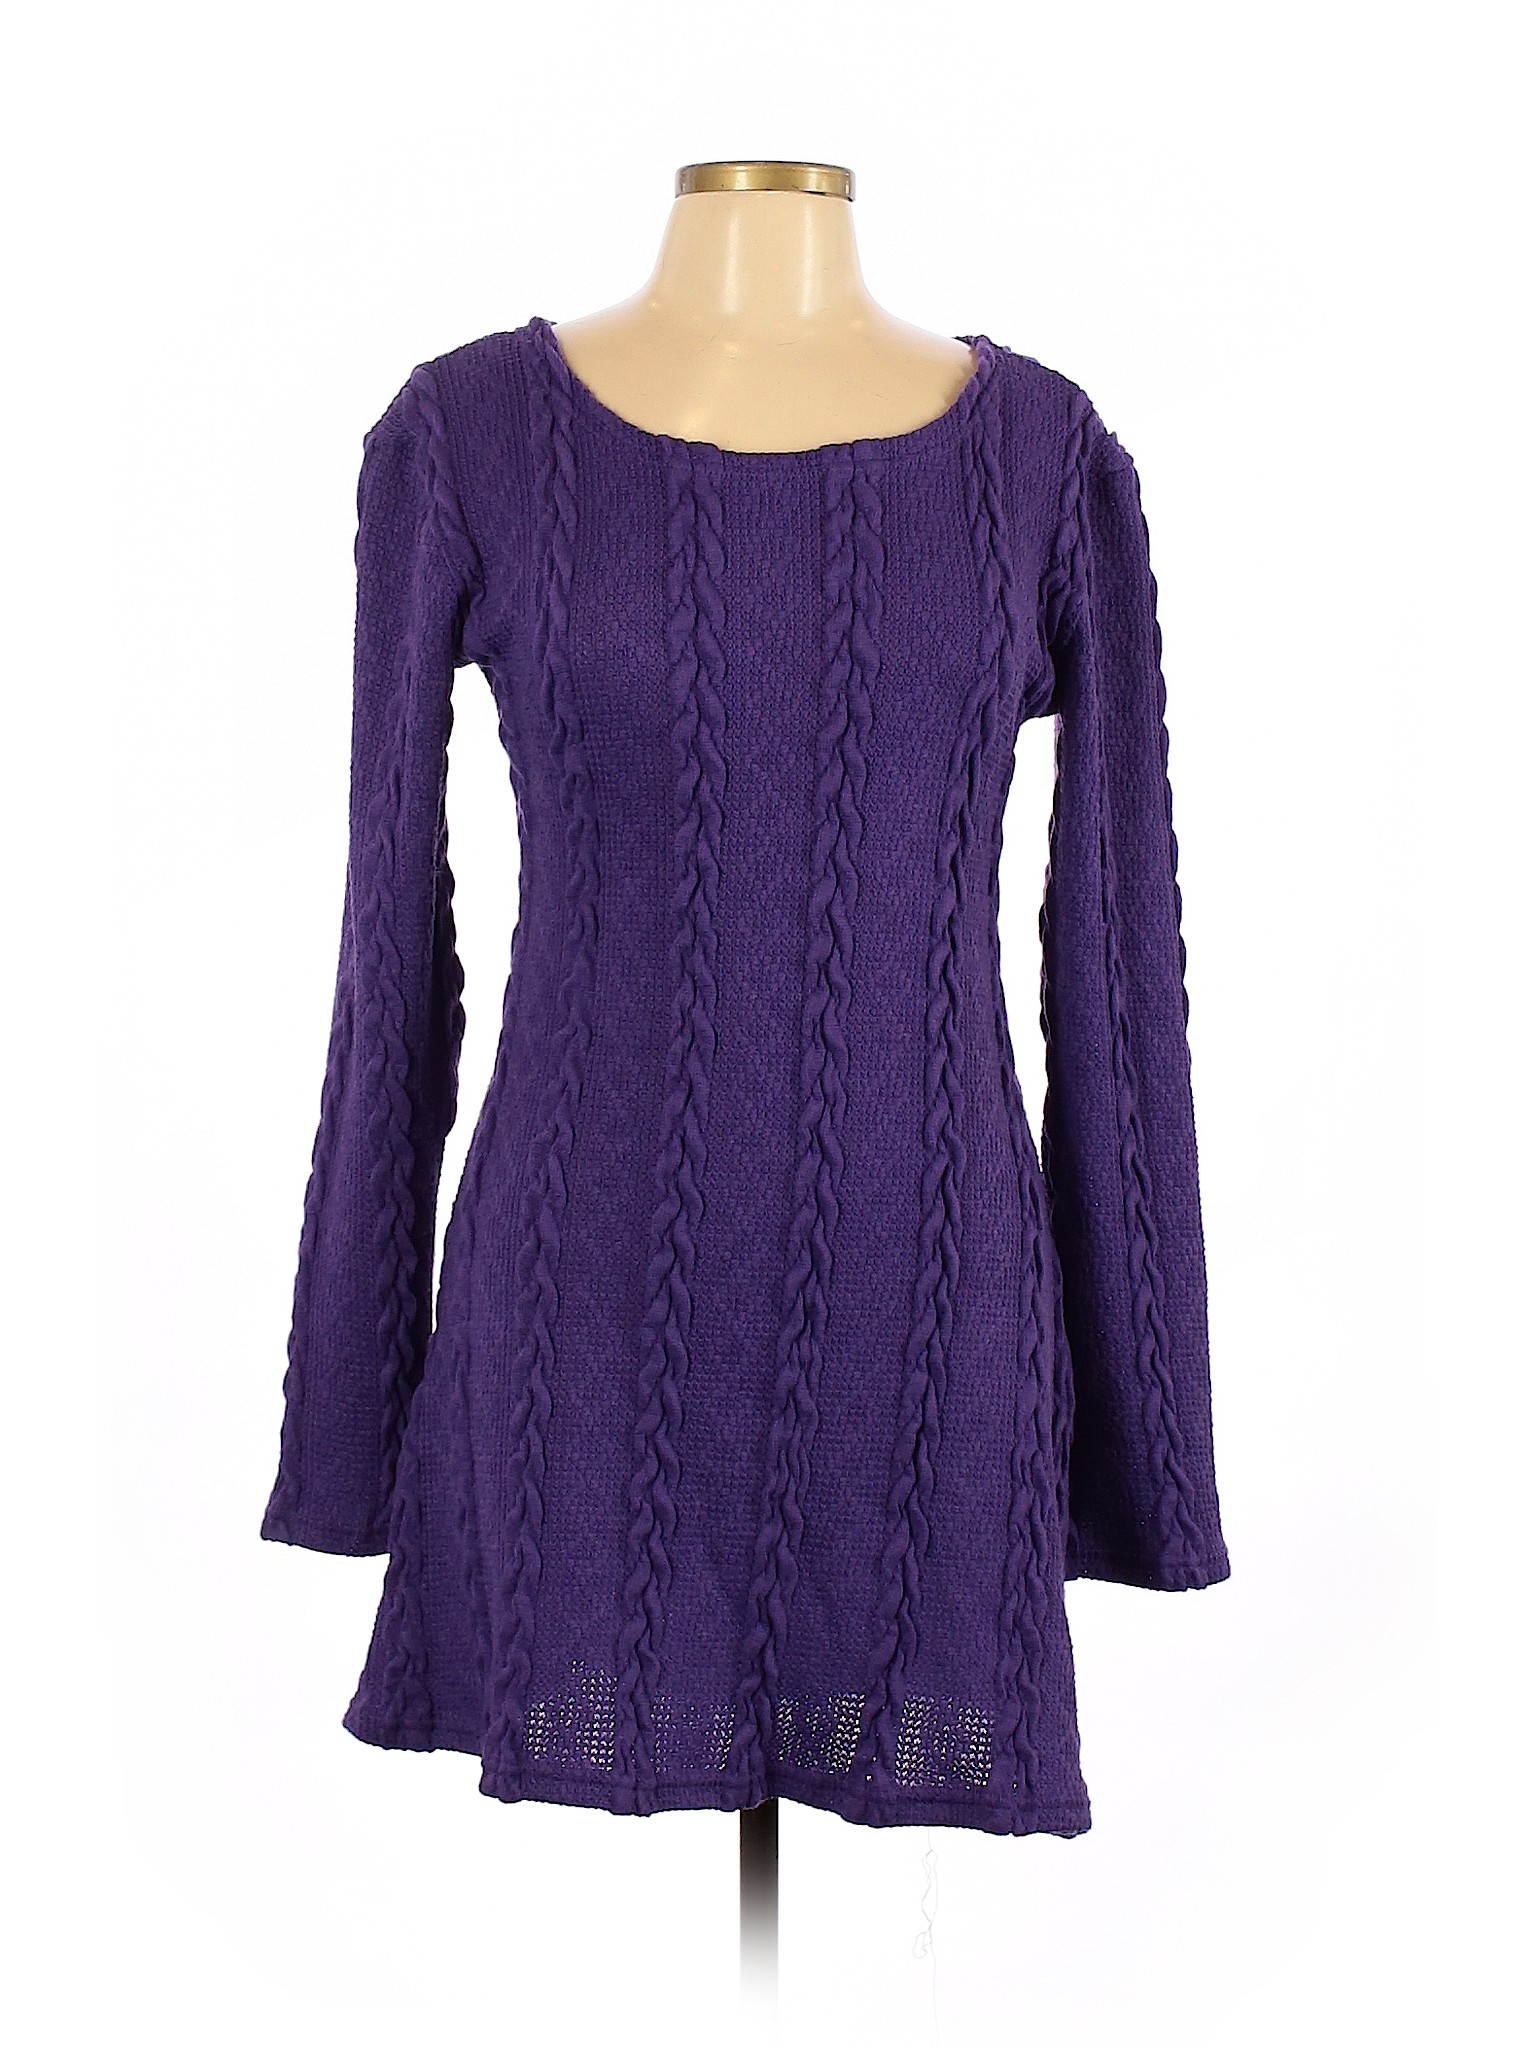 Assorted Brands Women Purple Casual Dress L | eBay